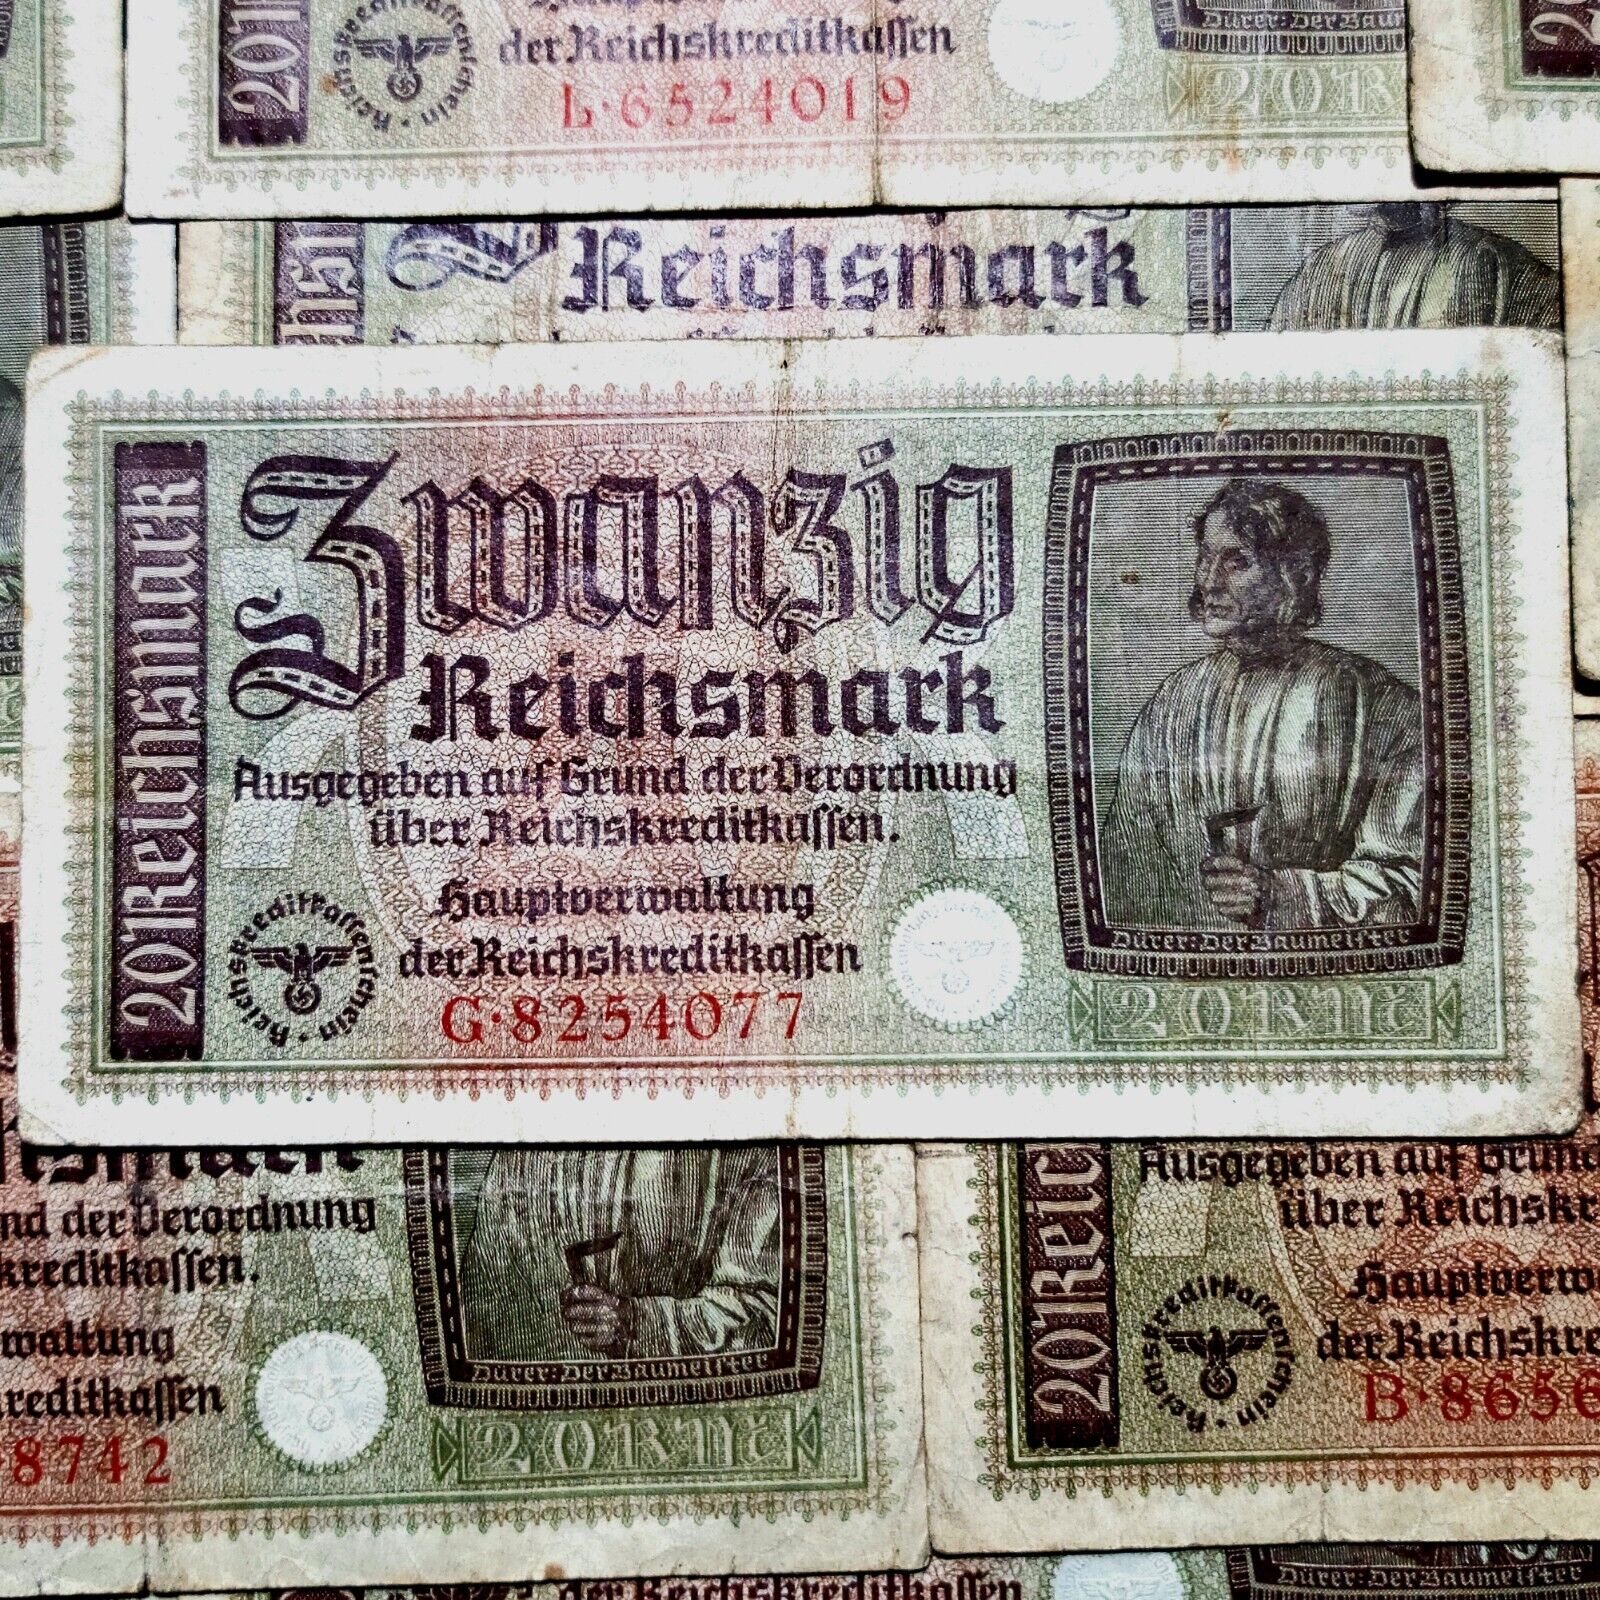 20 Reichsmark WWII-Era Genuine Third Reich 1939-1945 Nazi Germany Banknote